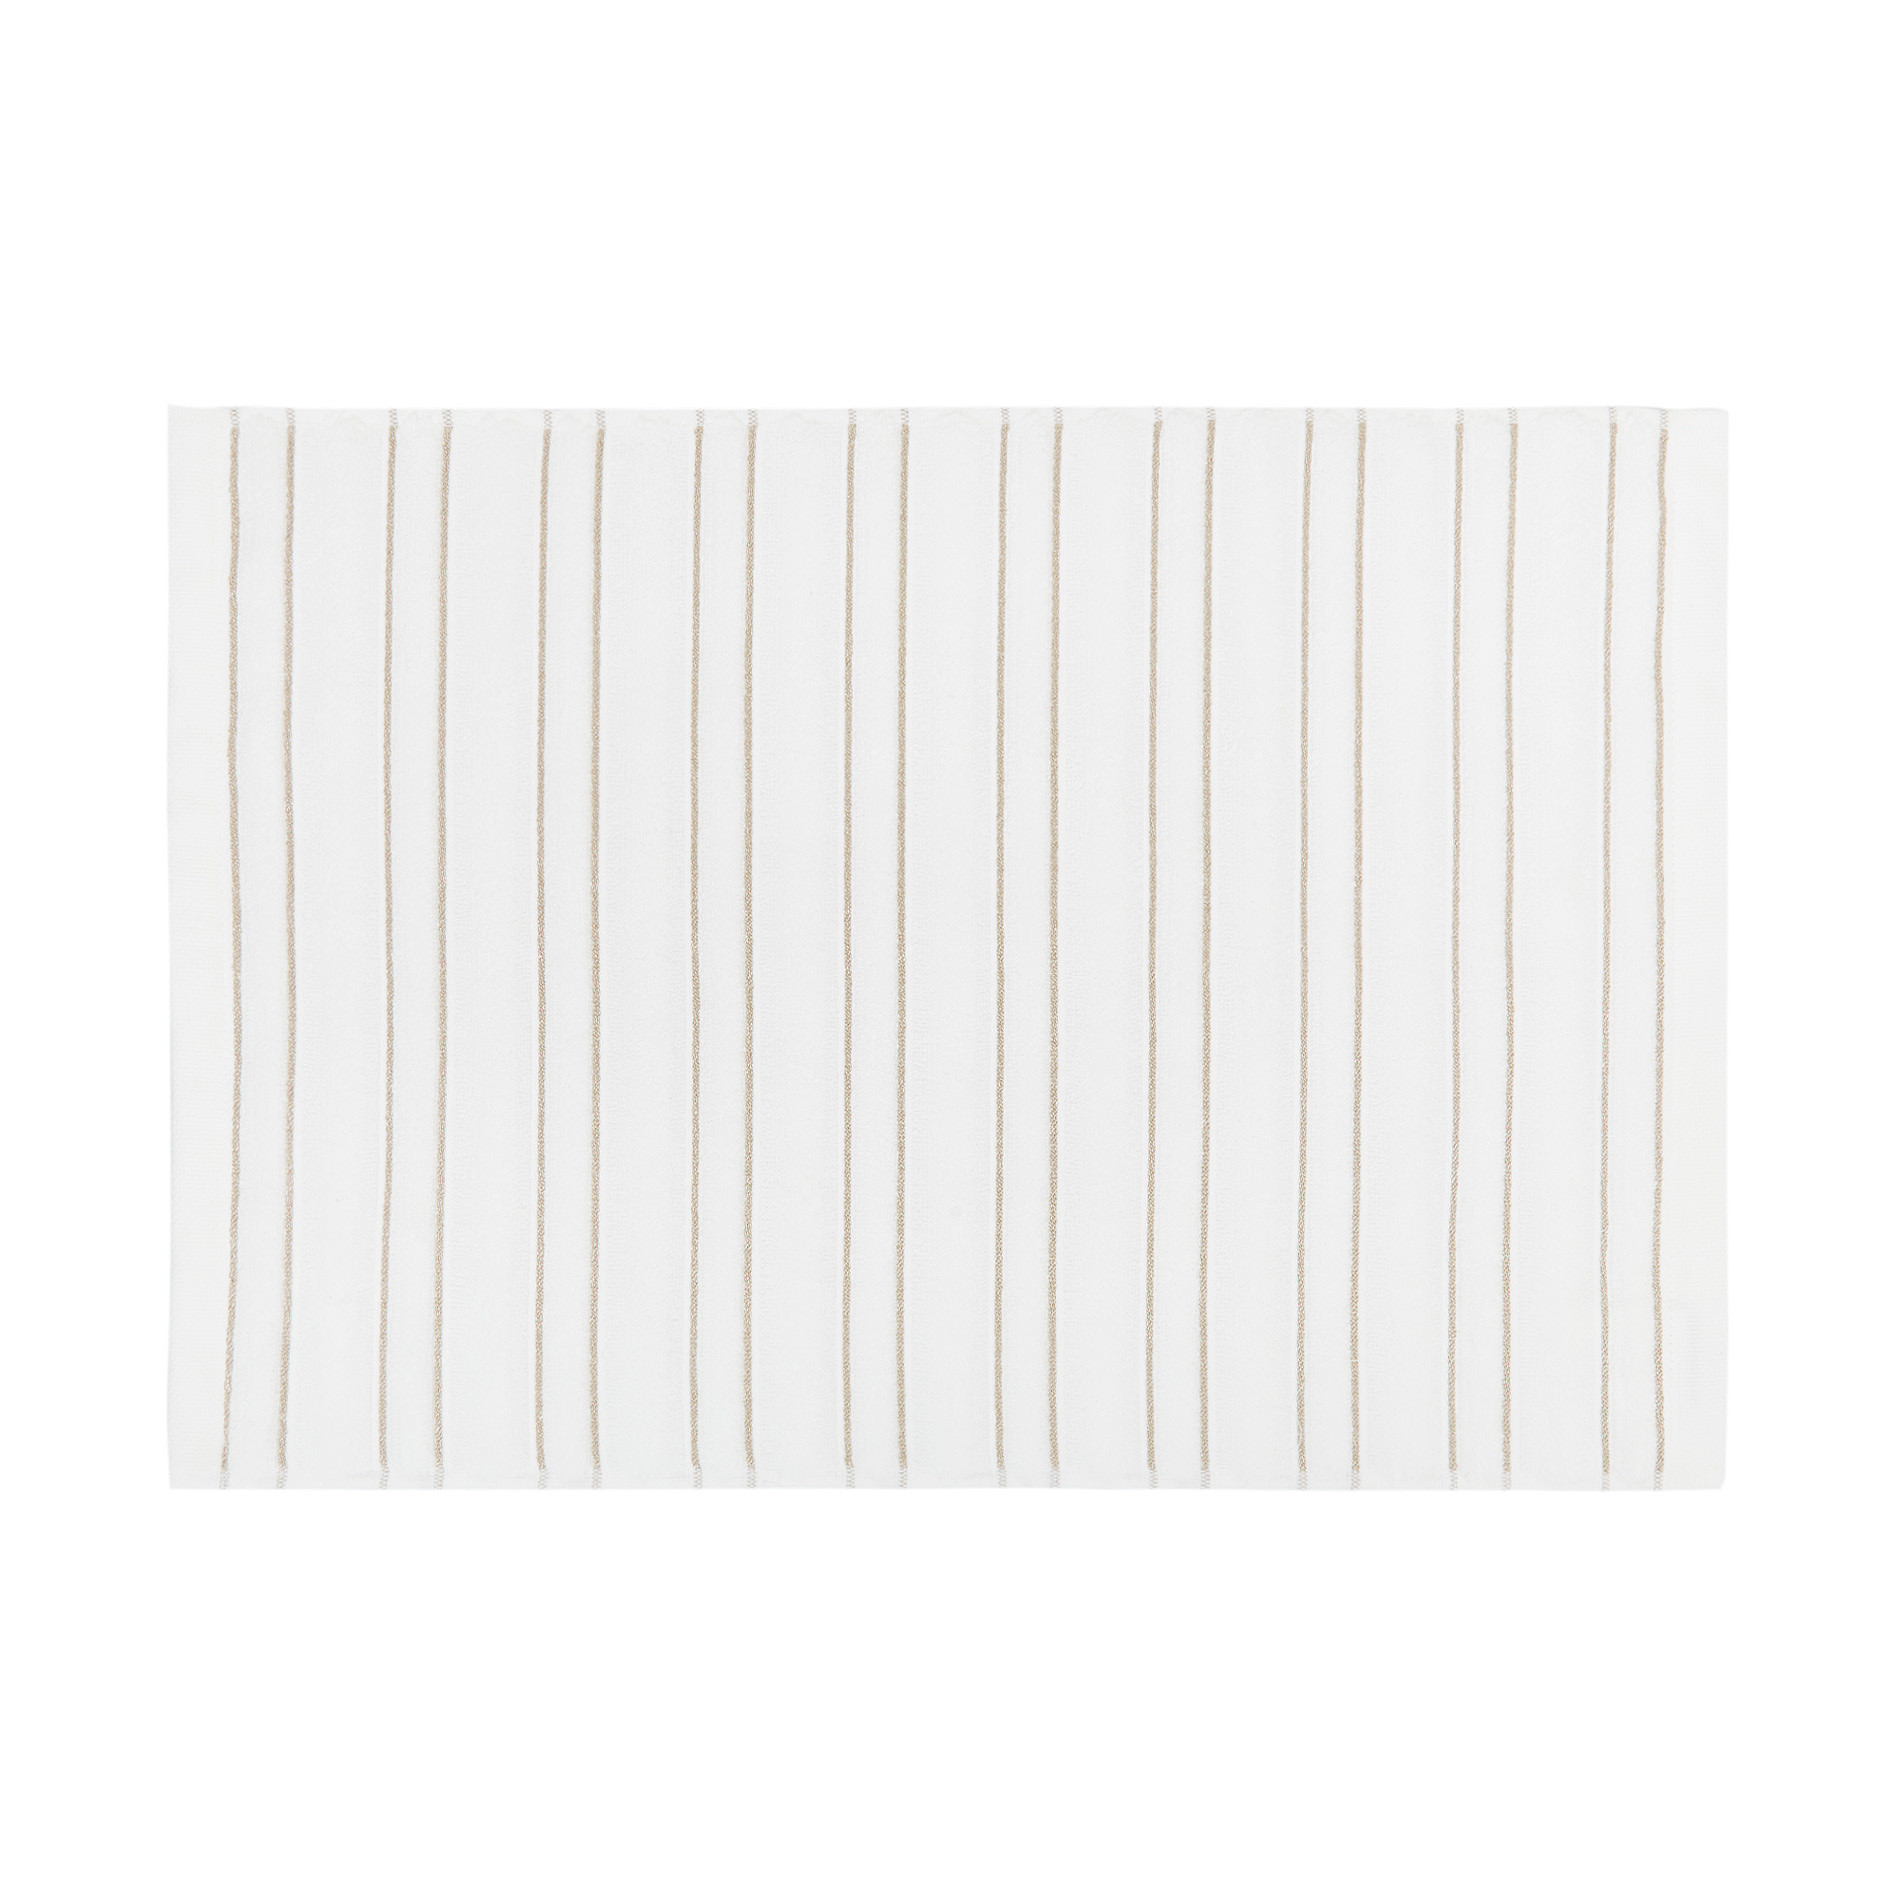 Asciugamano spugna di cotone motivo a righe Portofino, Bianco, large image number 1